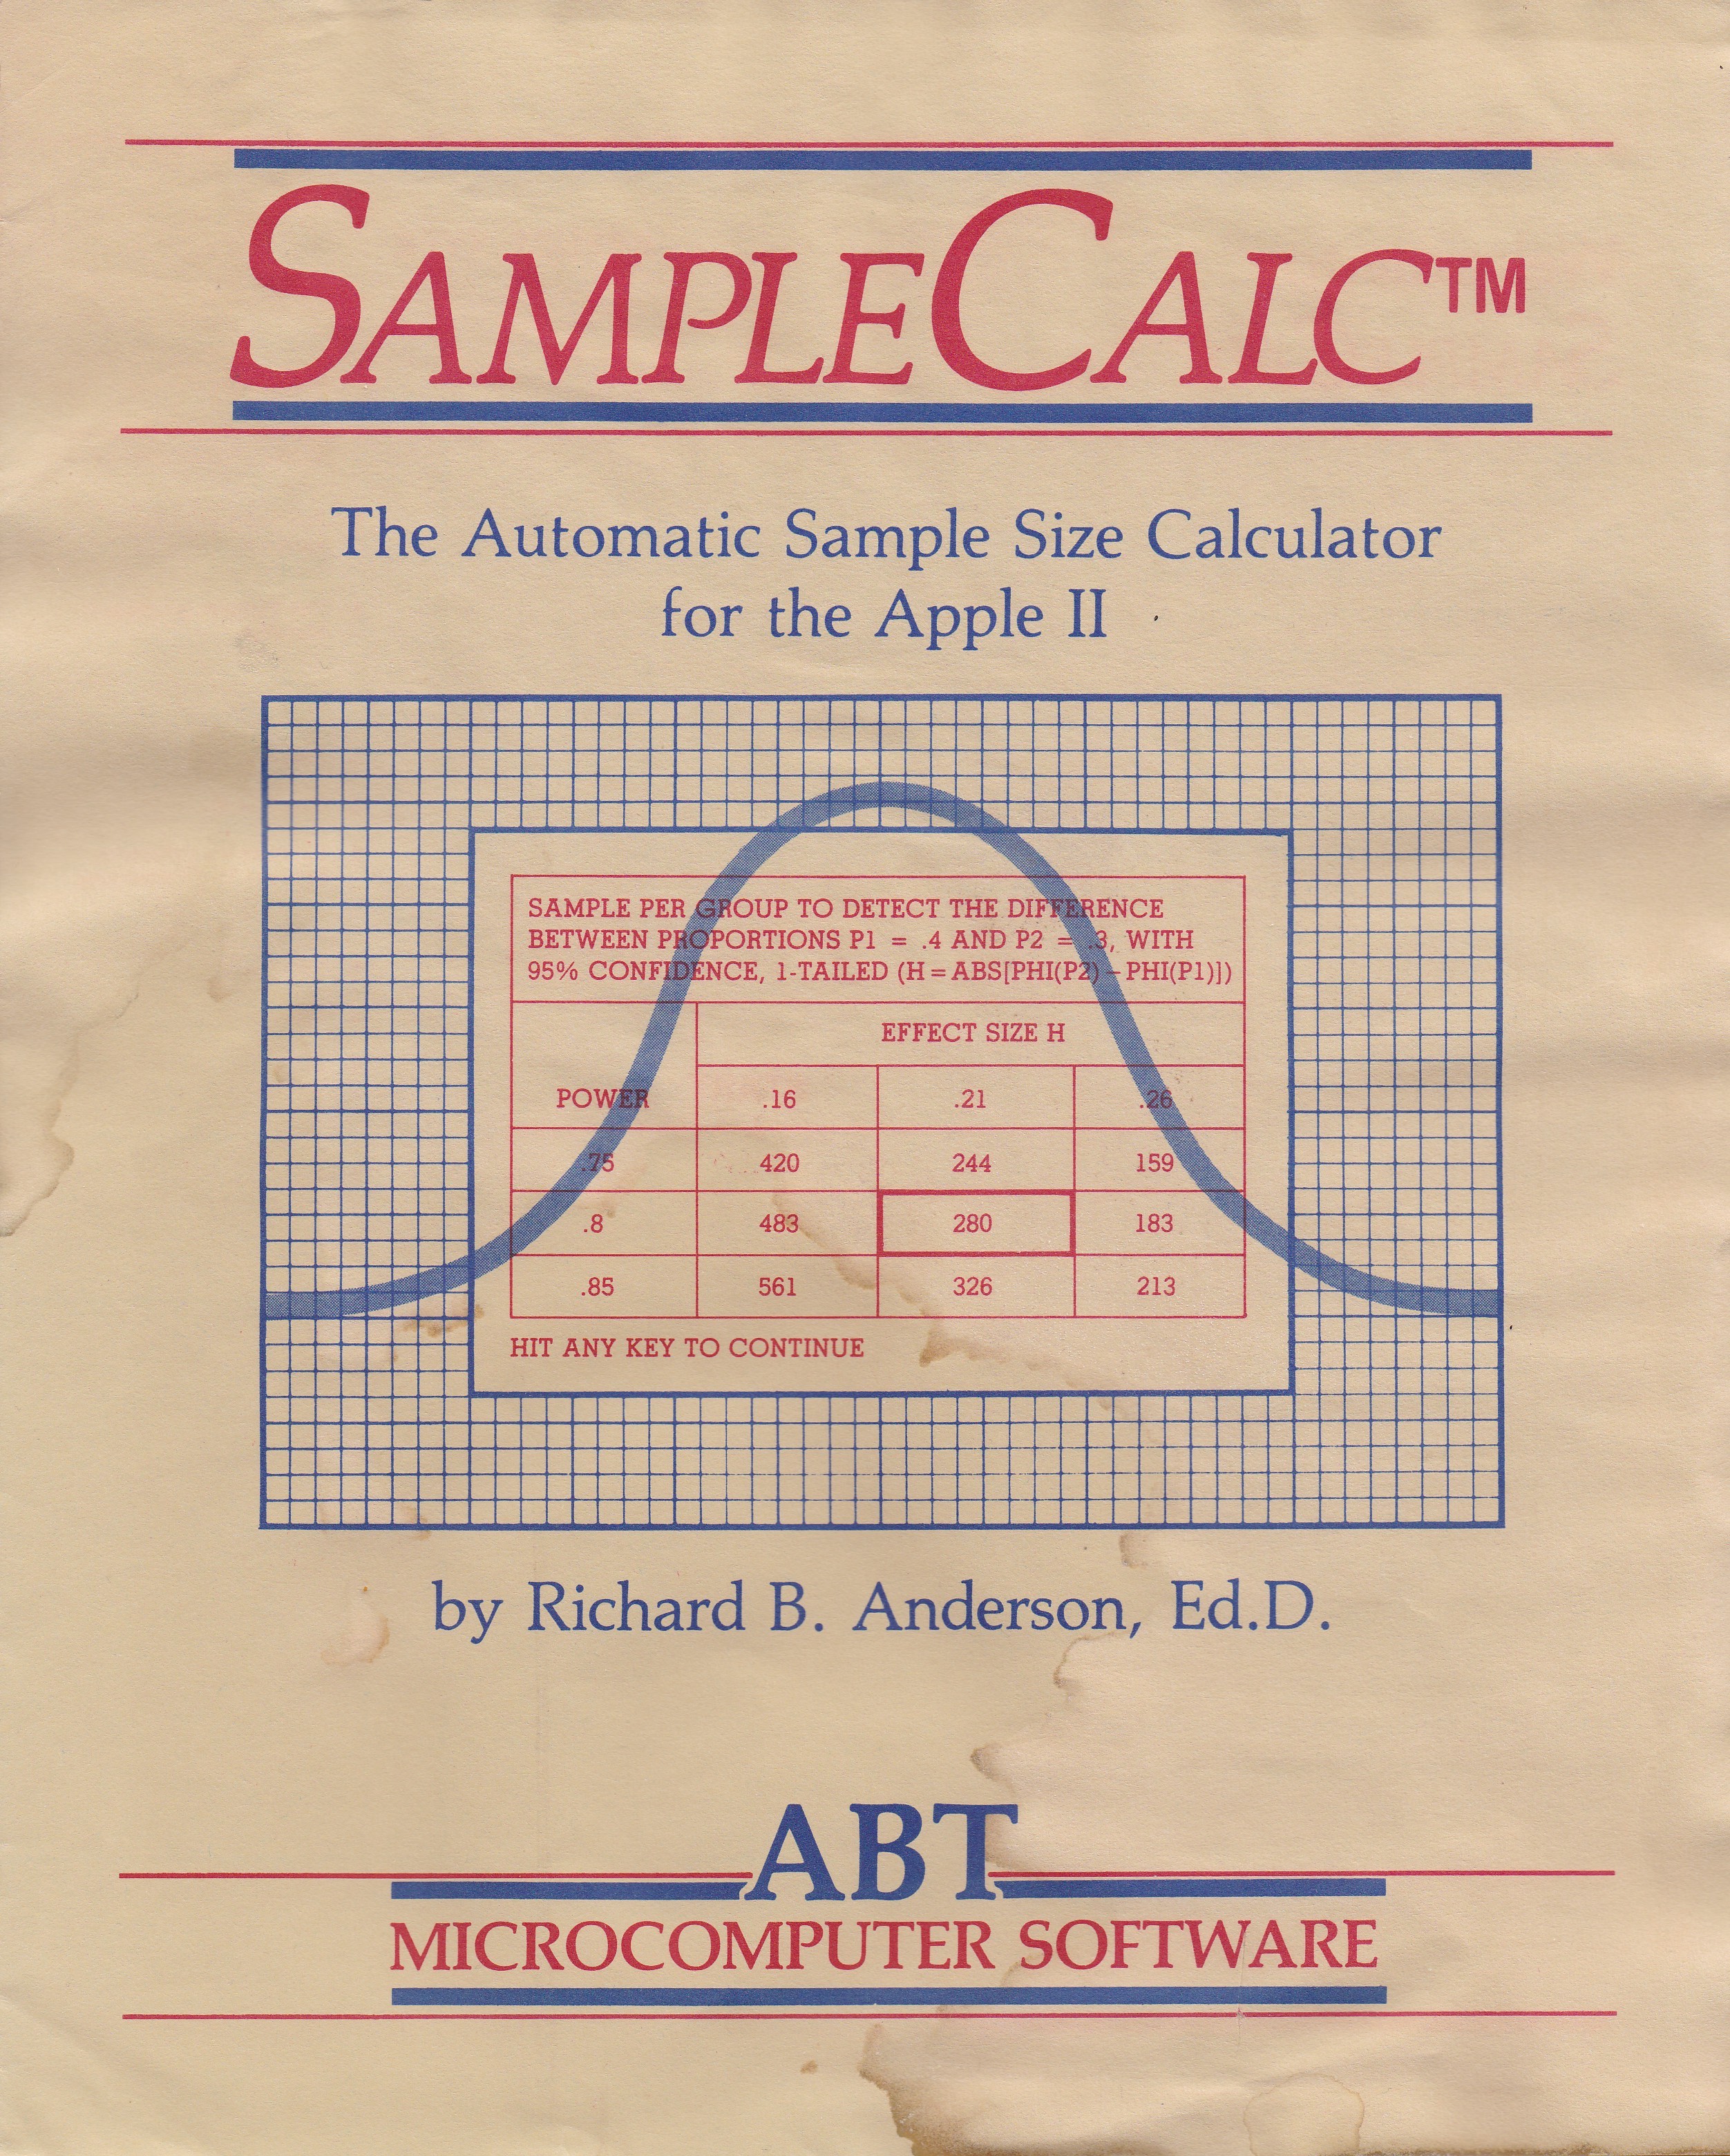 SampleCalc